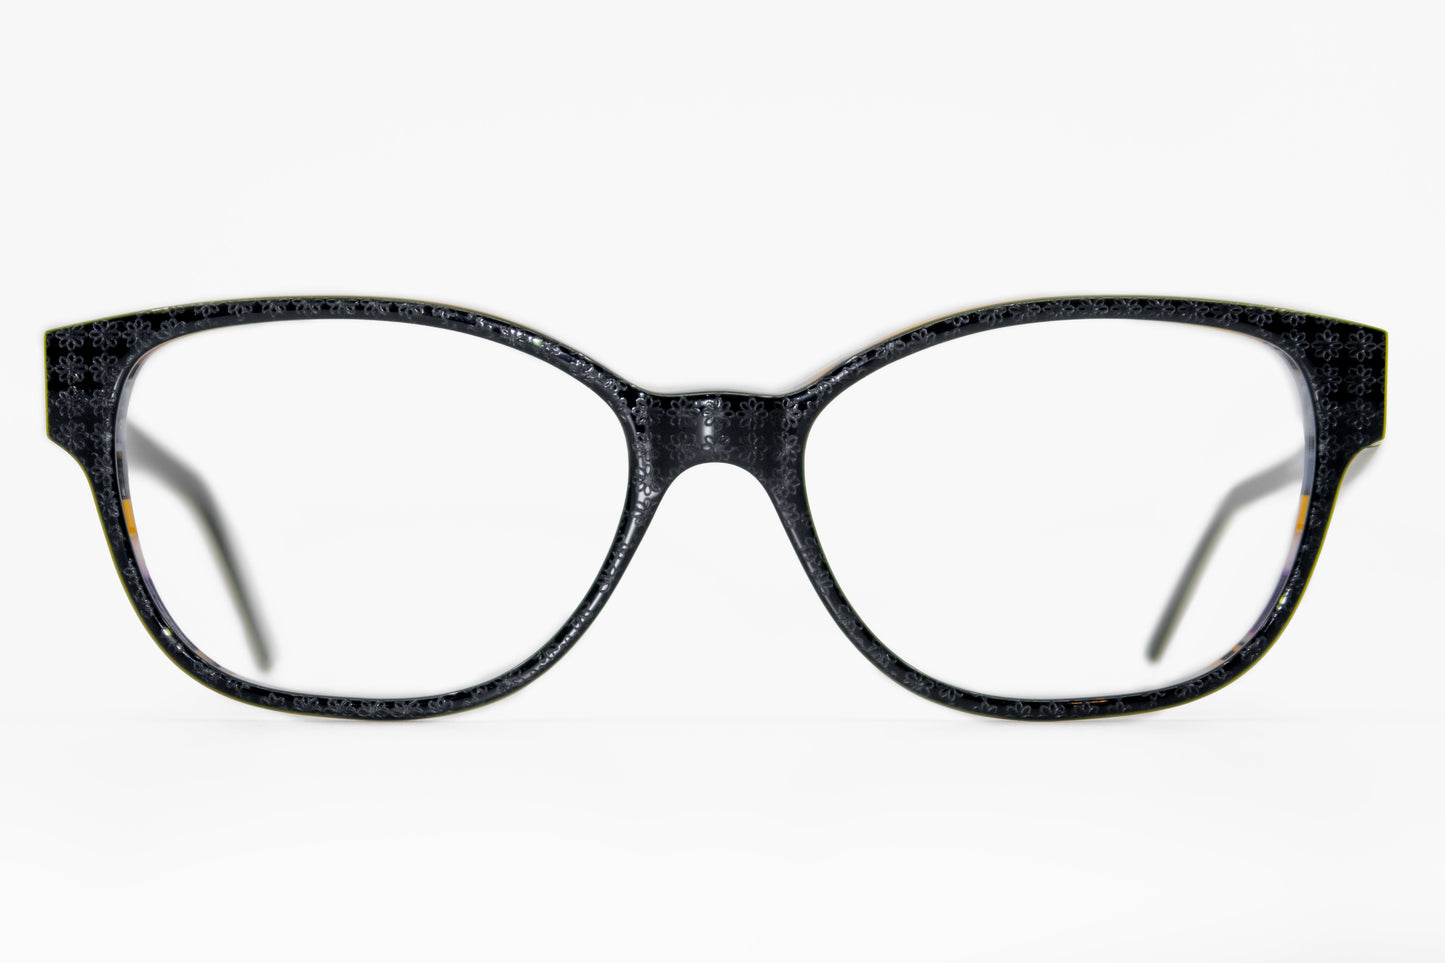 2662 by La Bleu Frames Glasses